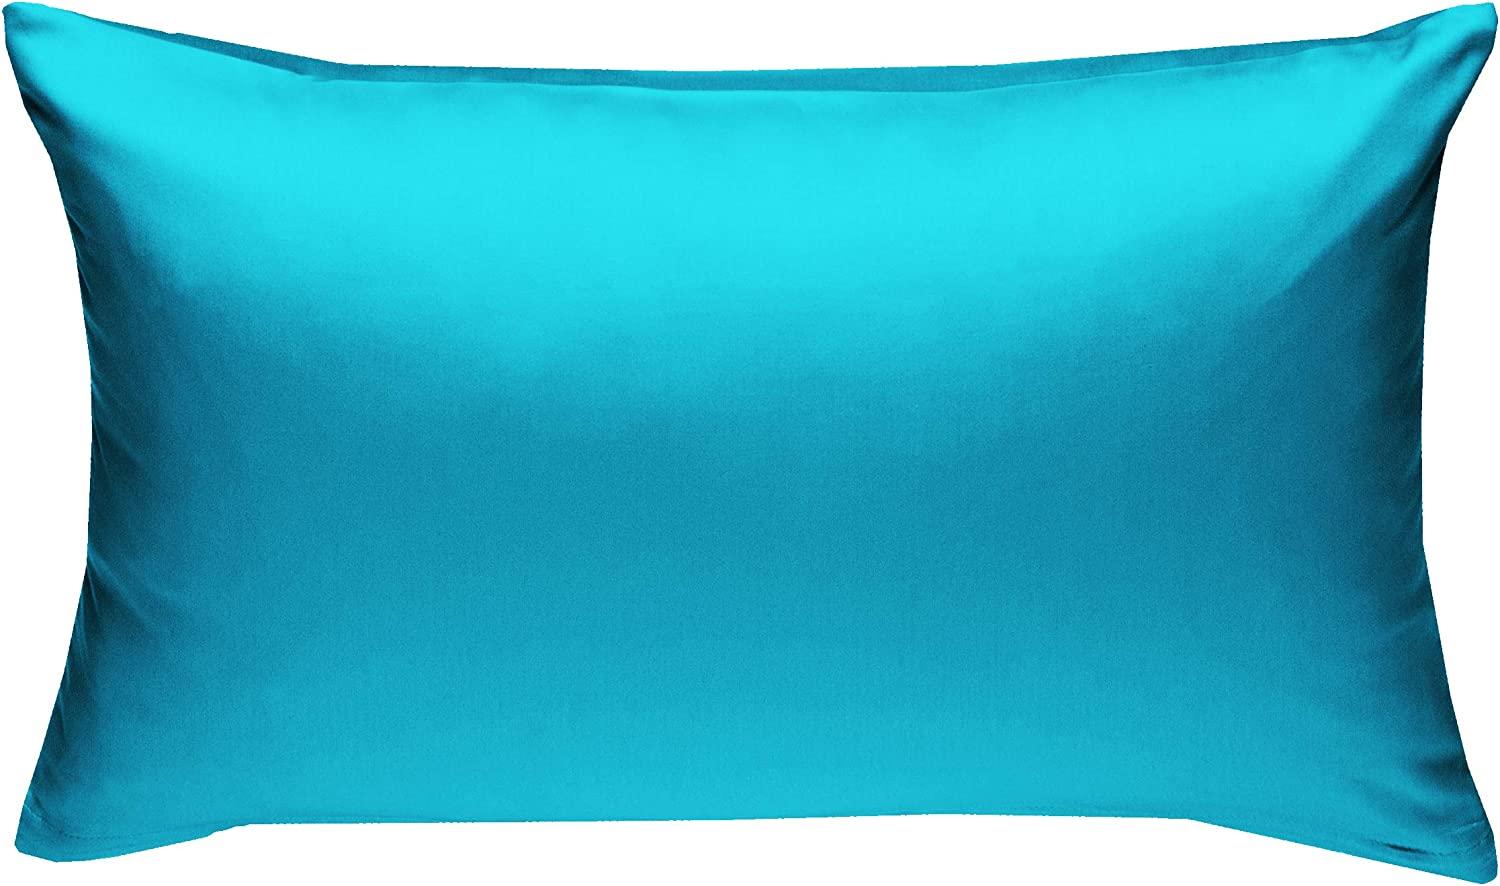 Bettwaesche-mit-Stil Mako-Satin / Baumwollsatin Bettwäsche uni / einfarbig türkis Kissenbezug 40x60 cm Bild 1